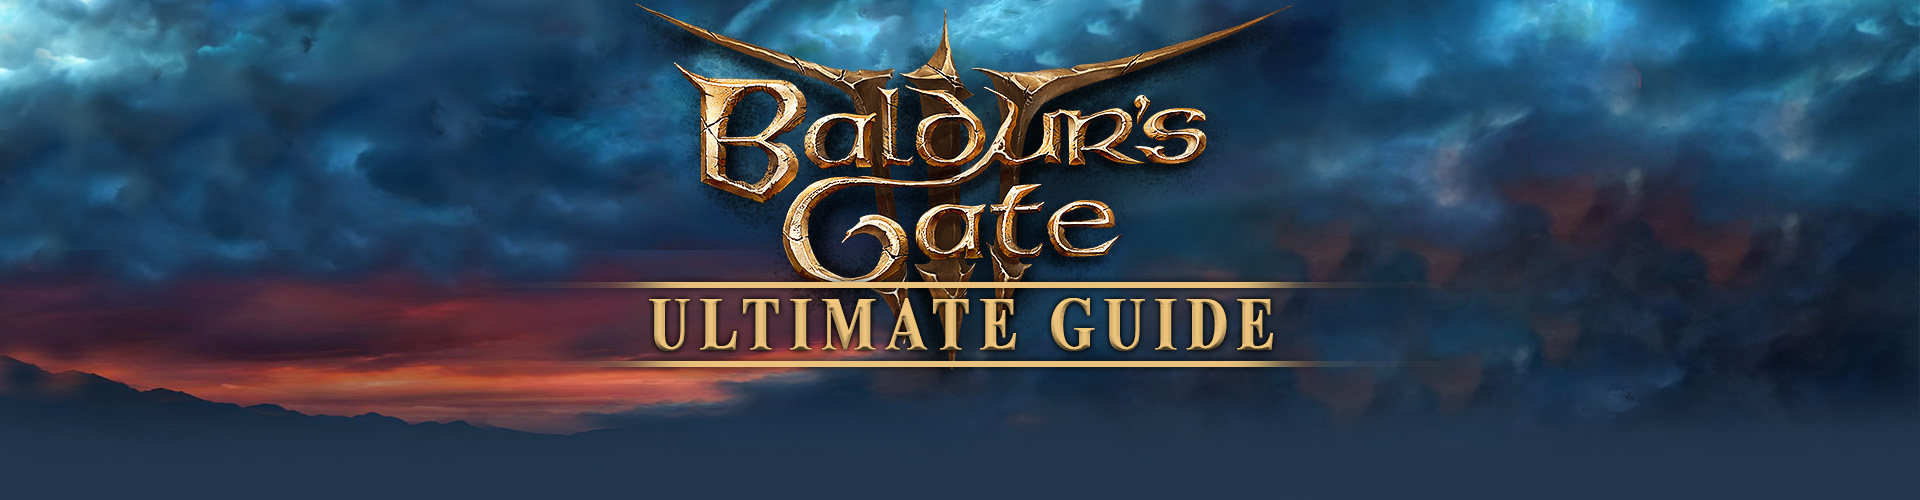 Jeux comme Baldur's Gate 3